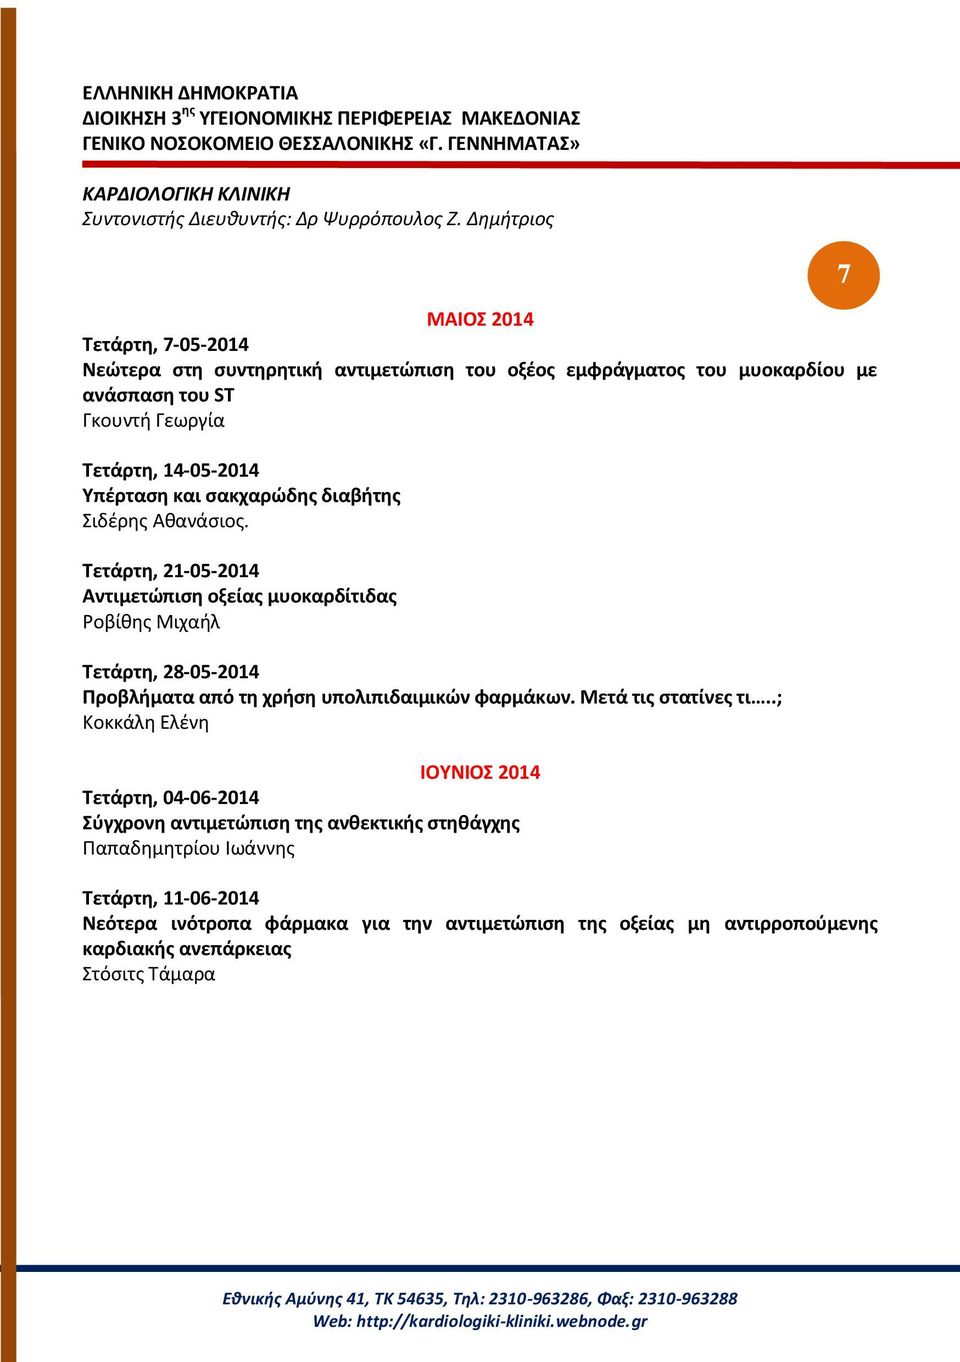 Τετάρτη, 21-05-2014 Αντιμετώπιση οξείας μυοκαρδίτιδας Ροβίθης Μιχαήλ Τετάρτη, 28-05-2014 Προβλήματα από τη χρήση υπολιπιδαιμικών φαρμάκων.